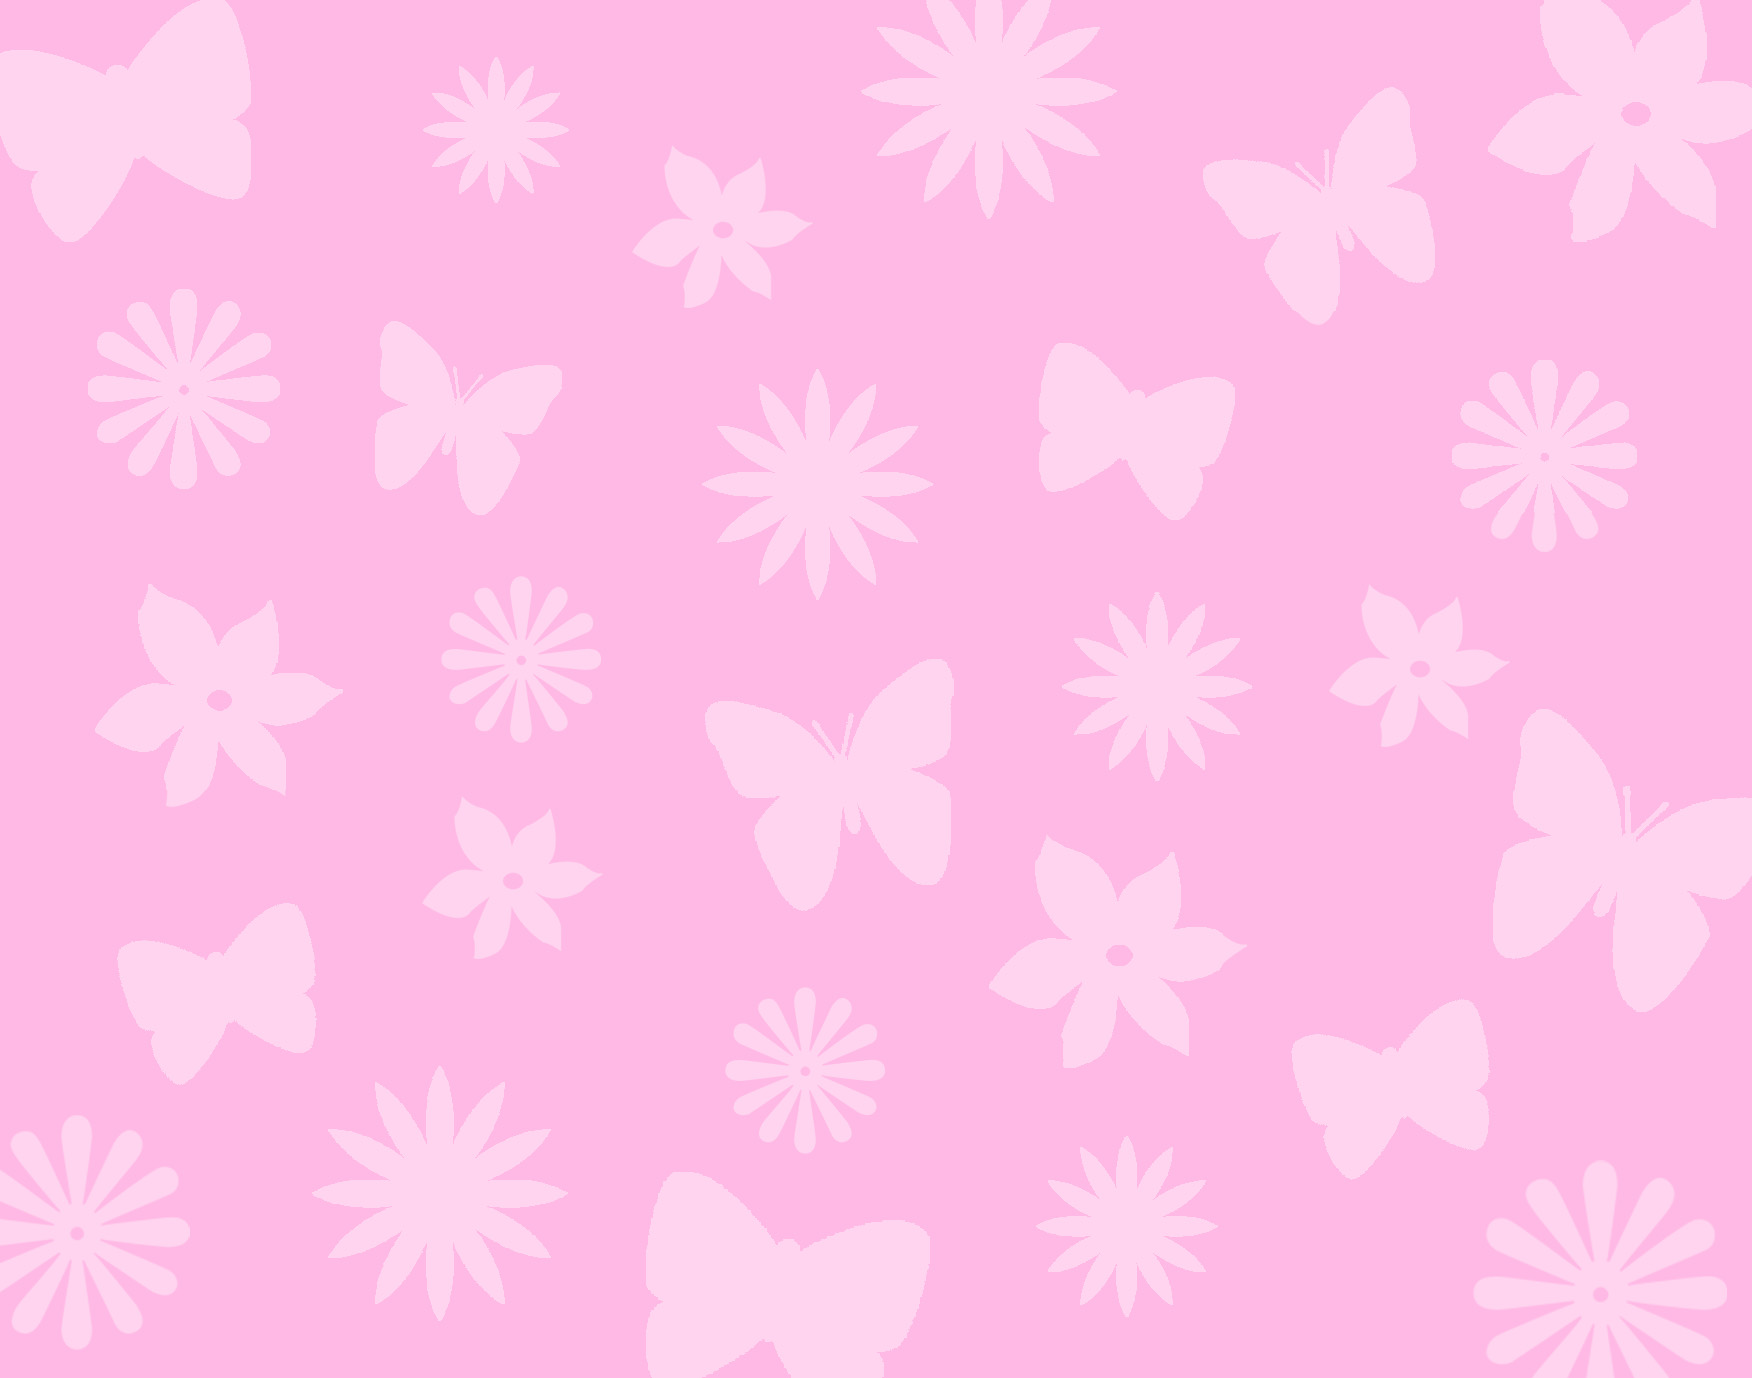 キッズピンクの壁紙,ピンク,パターン,設計,壁紙,包装紙